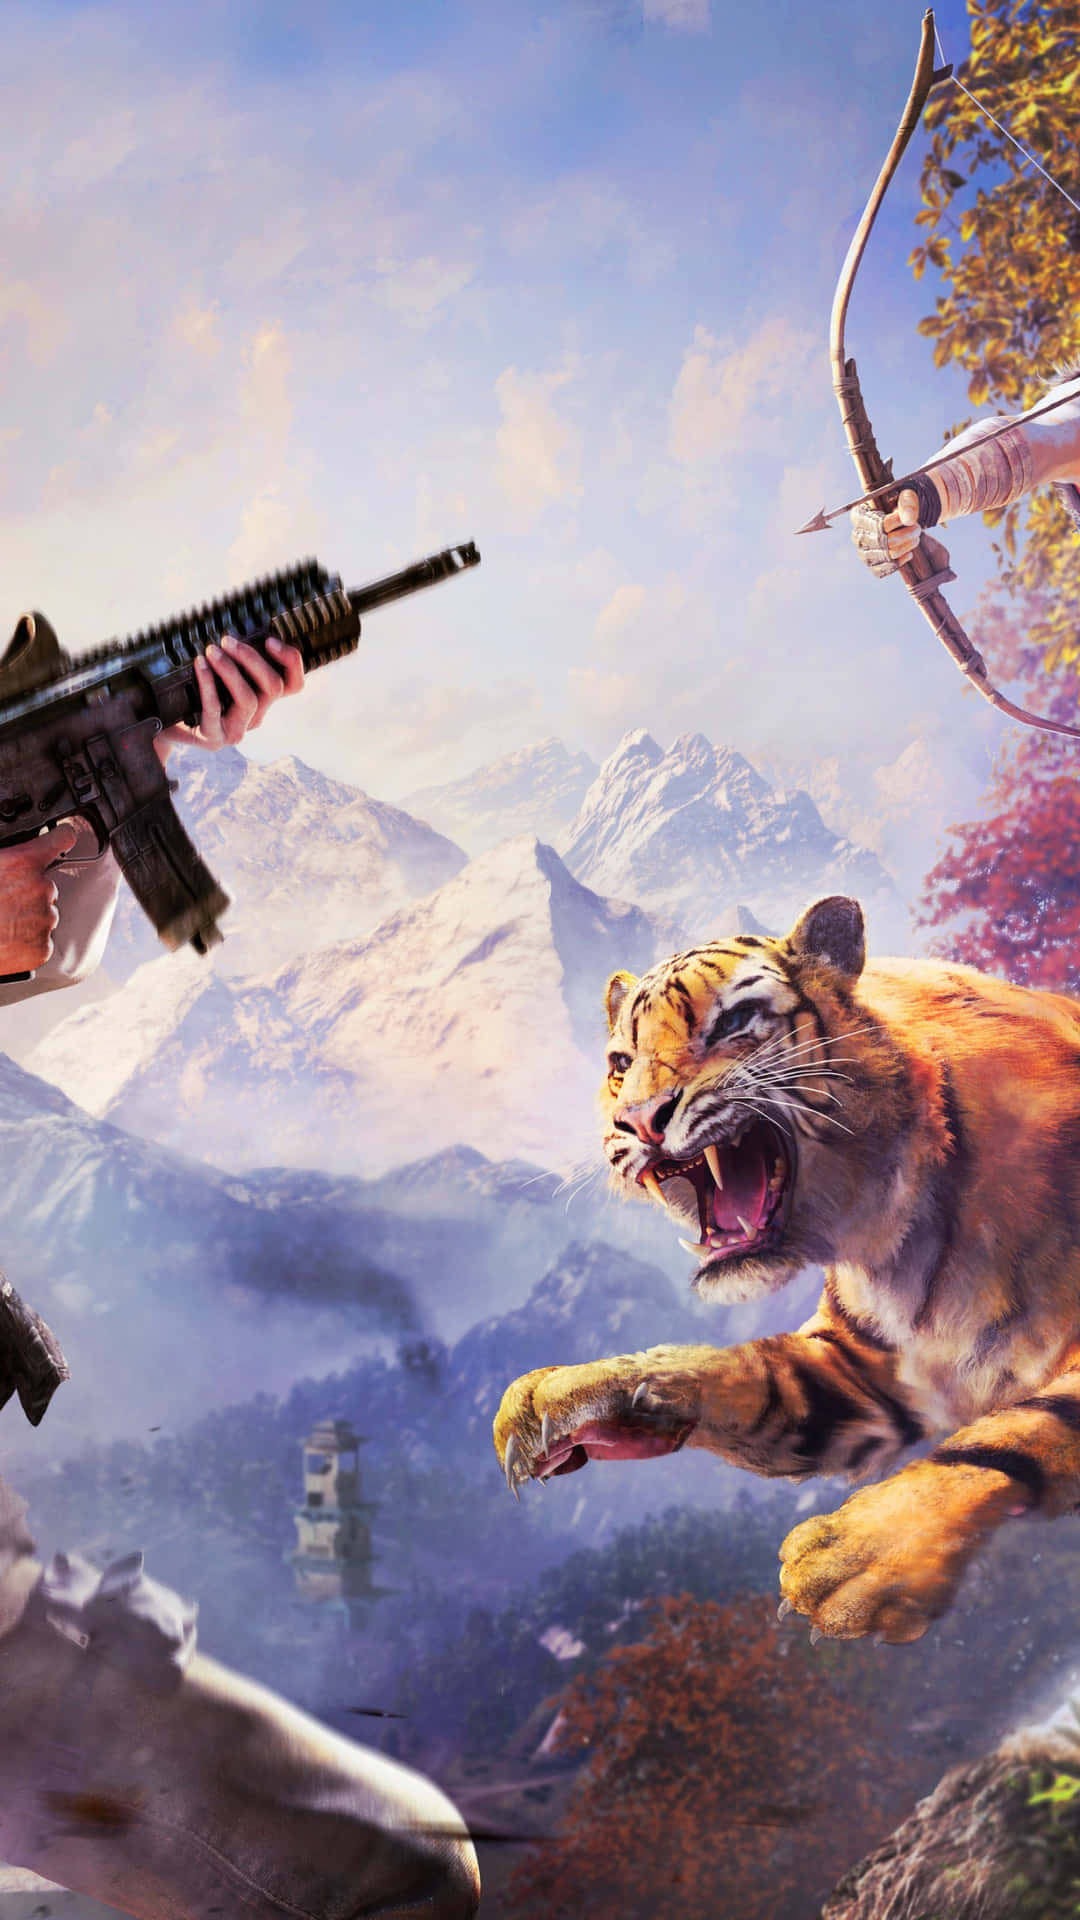 Tauchensie Ein In Eine Aufregende Welt Voller Abenteuer Und Erkunden Sie Kyrat Mit Far Cry 4. Wallpaper